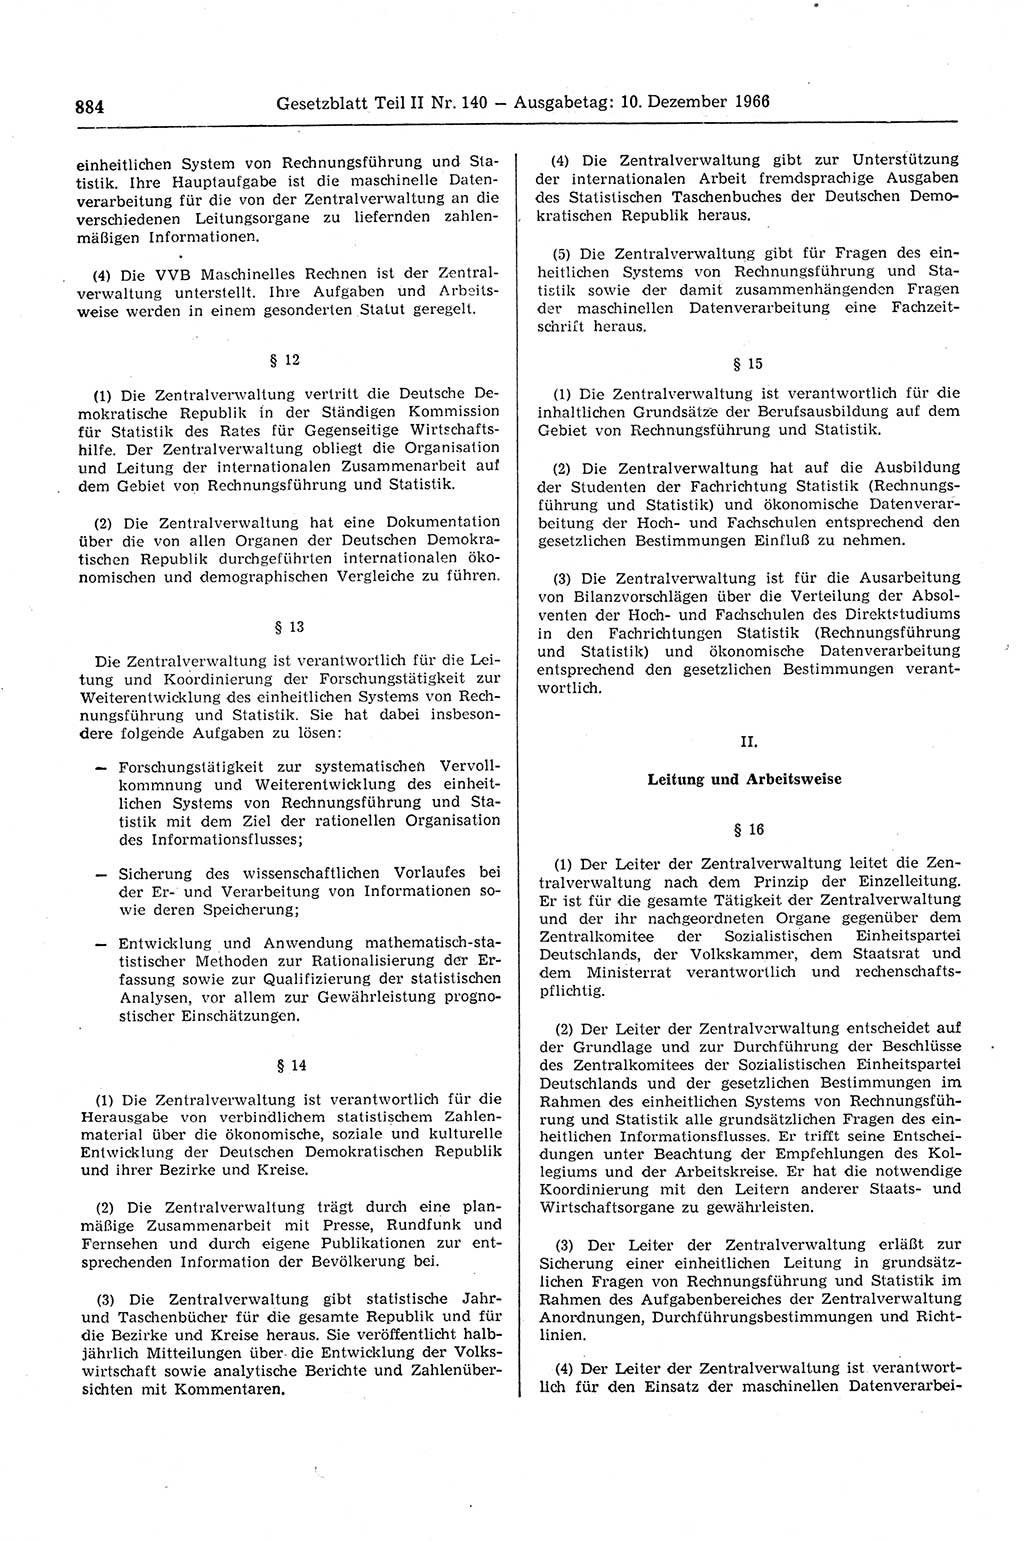 Gesetzblatt (GBl.) der Deutschen Demokratischen Republik (DDR) Teil ⅠⅠ 1966, Seite 884 (GBl. DDR ⅠⅠ 1966, S. 884)